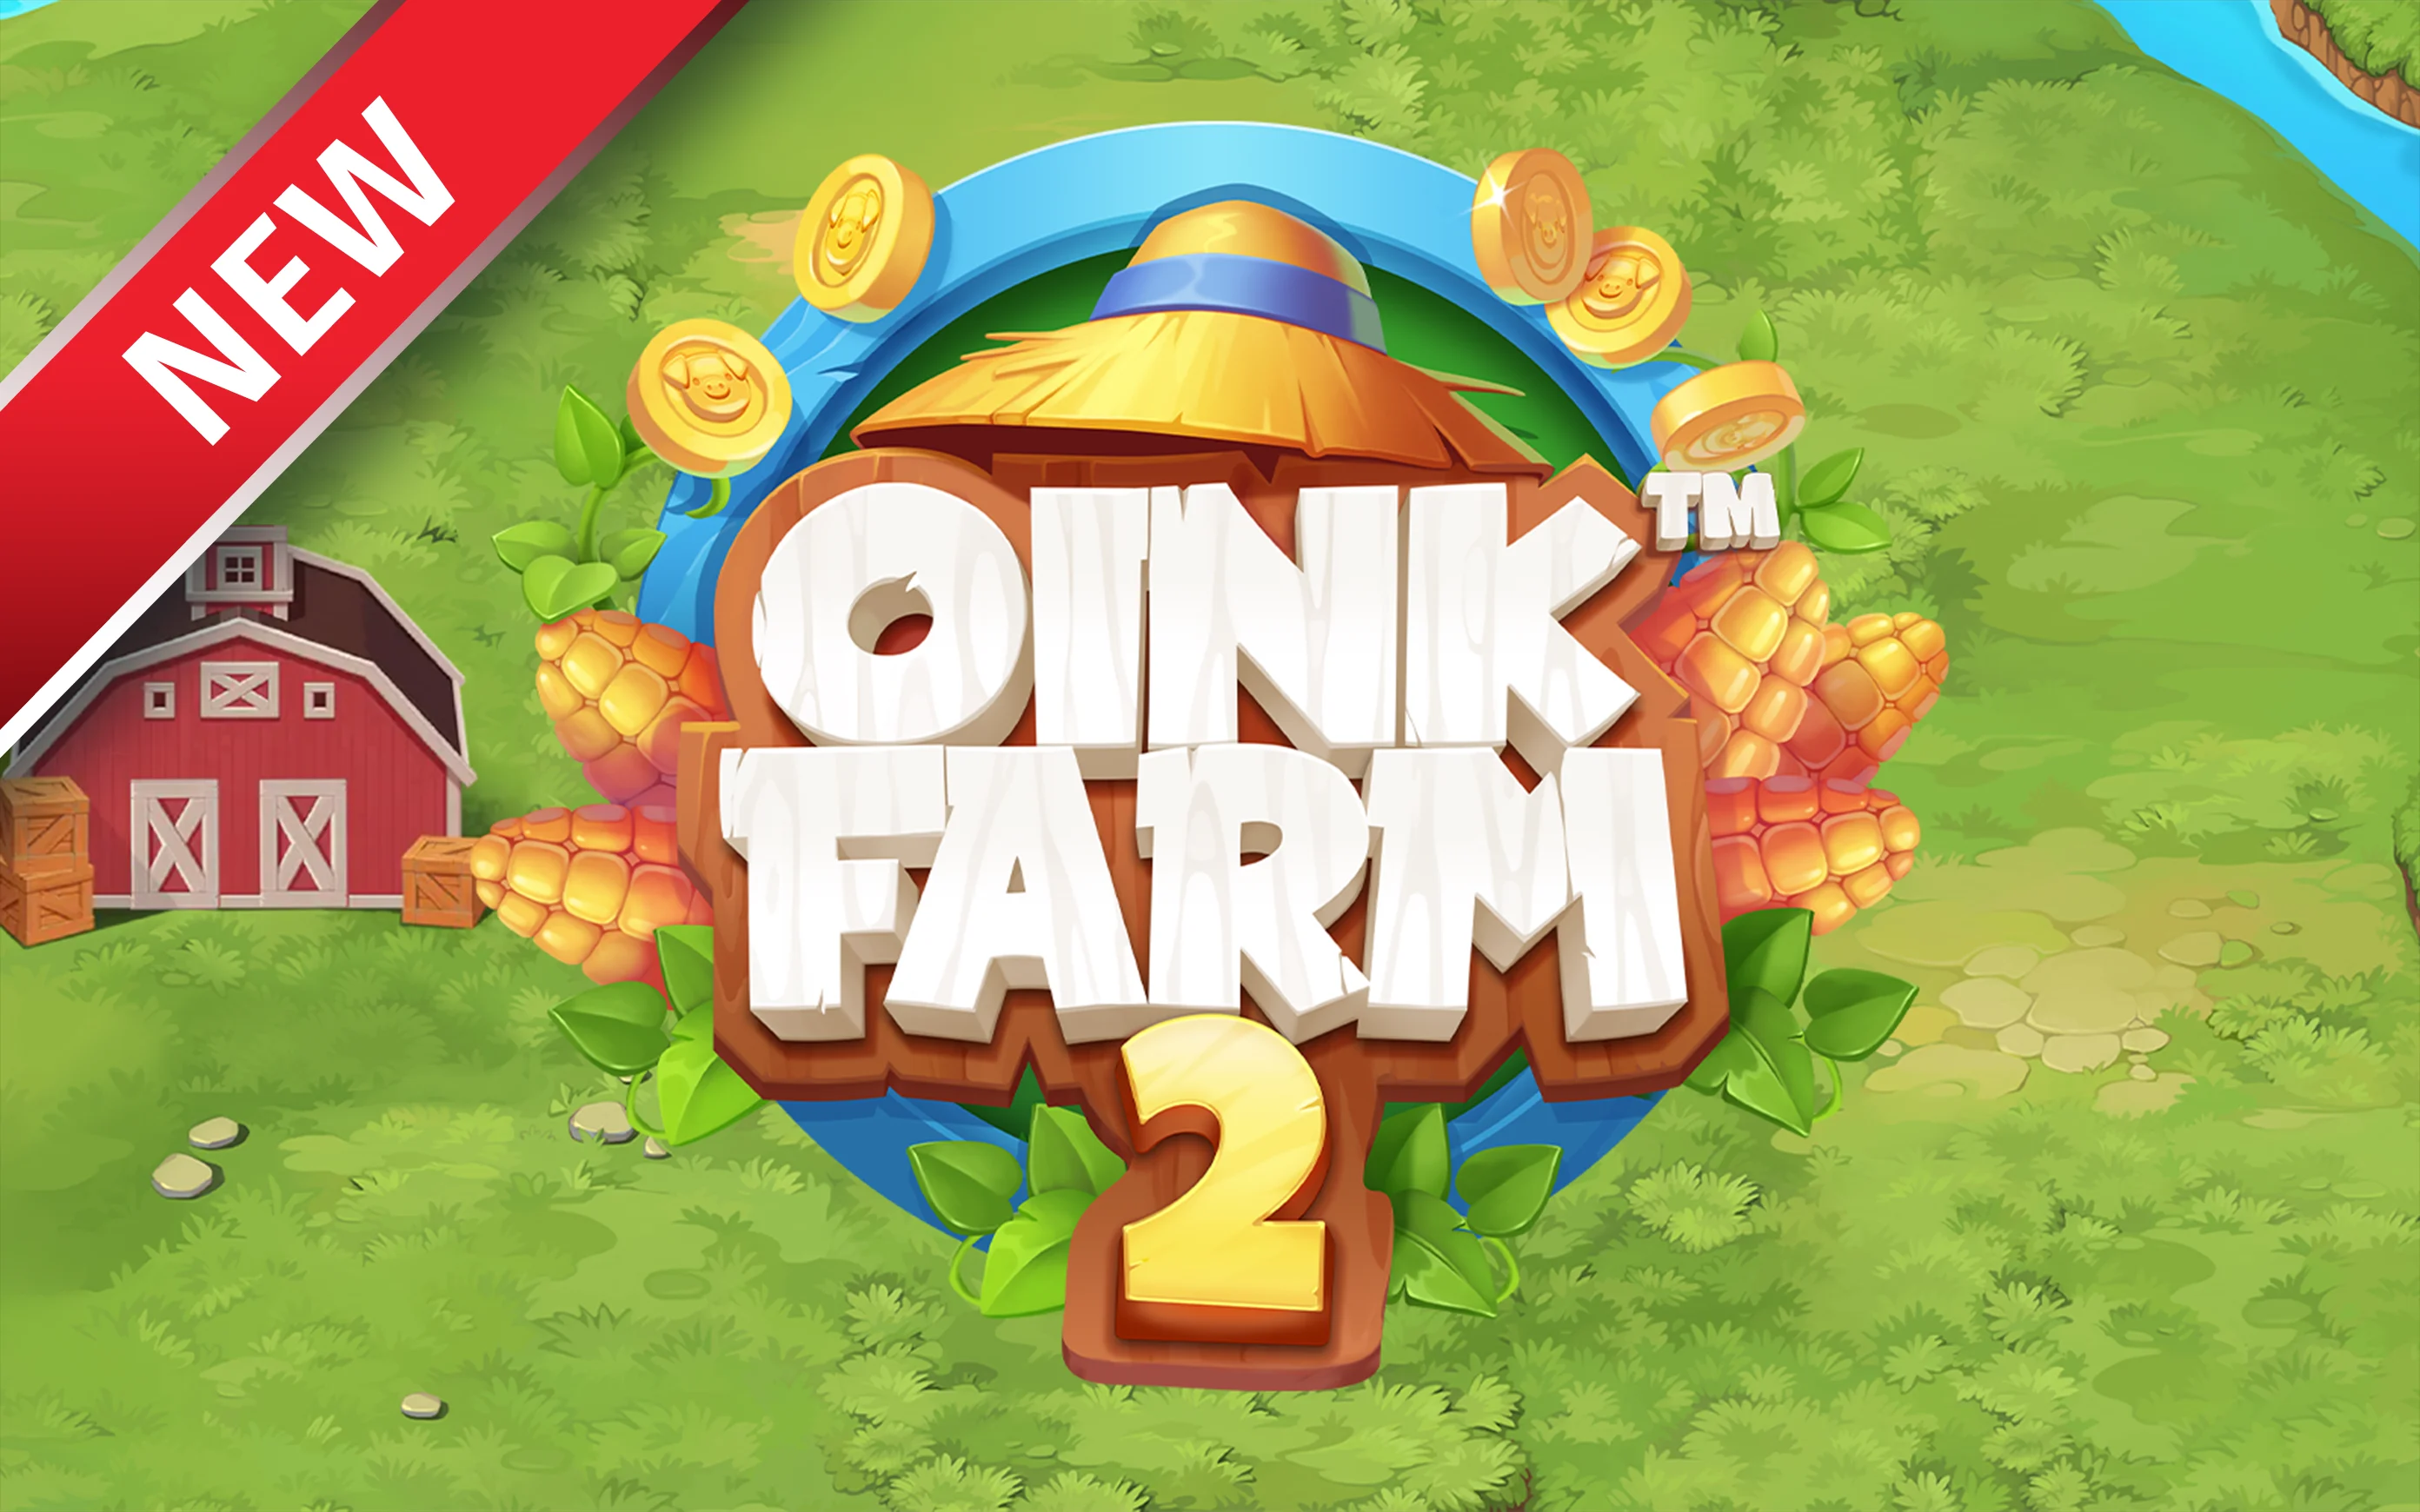 Speel Oink Farm 2™ op Starcasino.be online casino